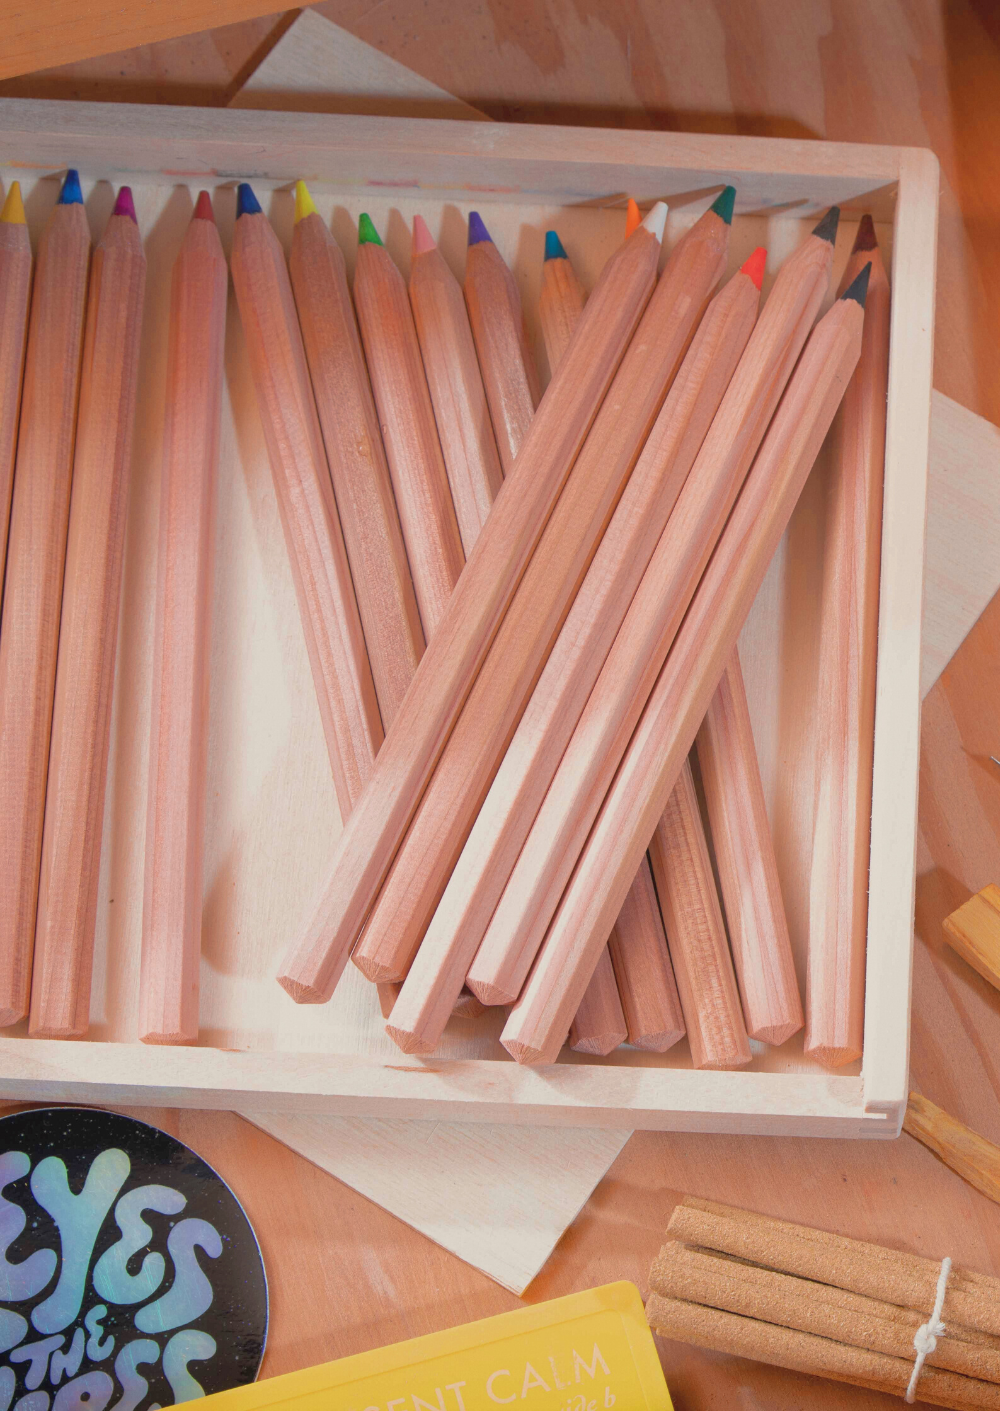 Colored Pencil Wooden Box